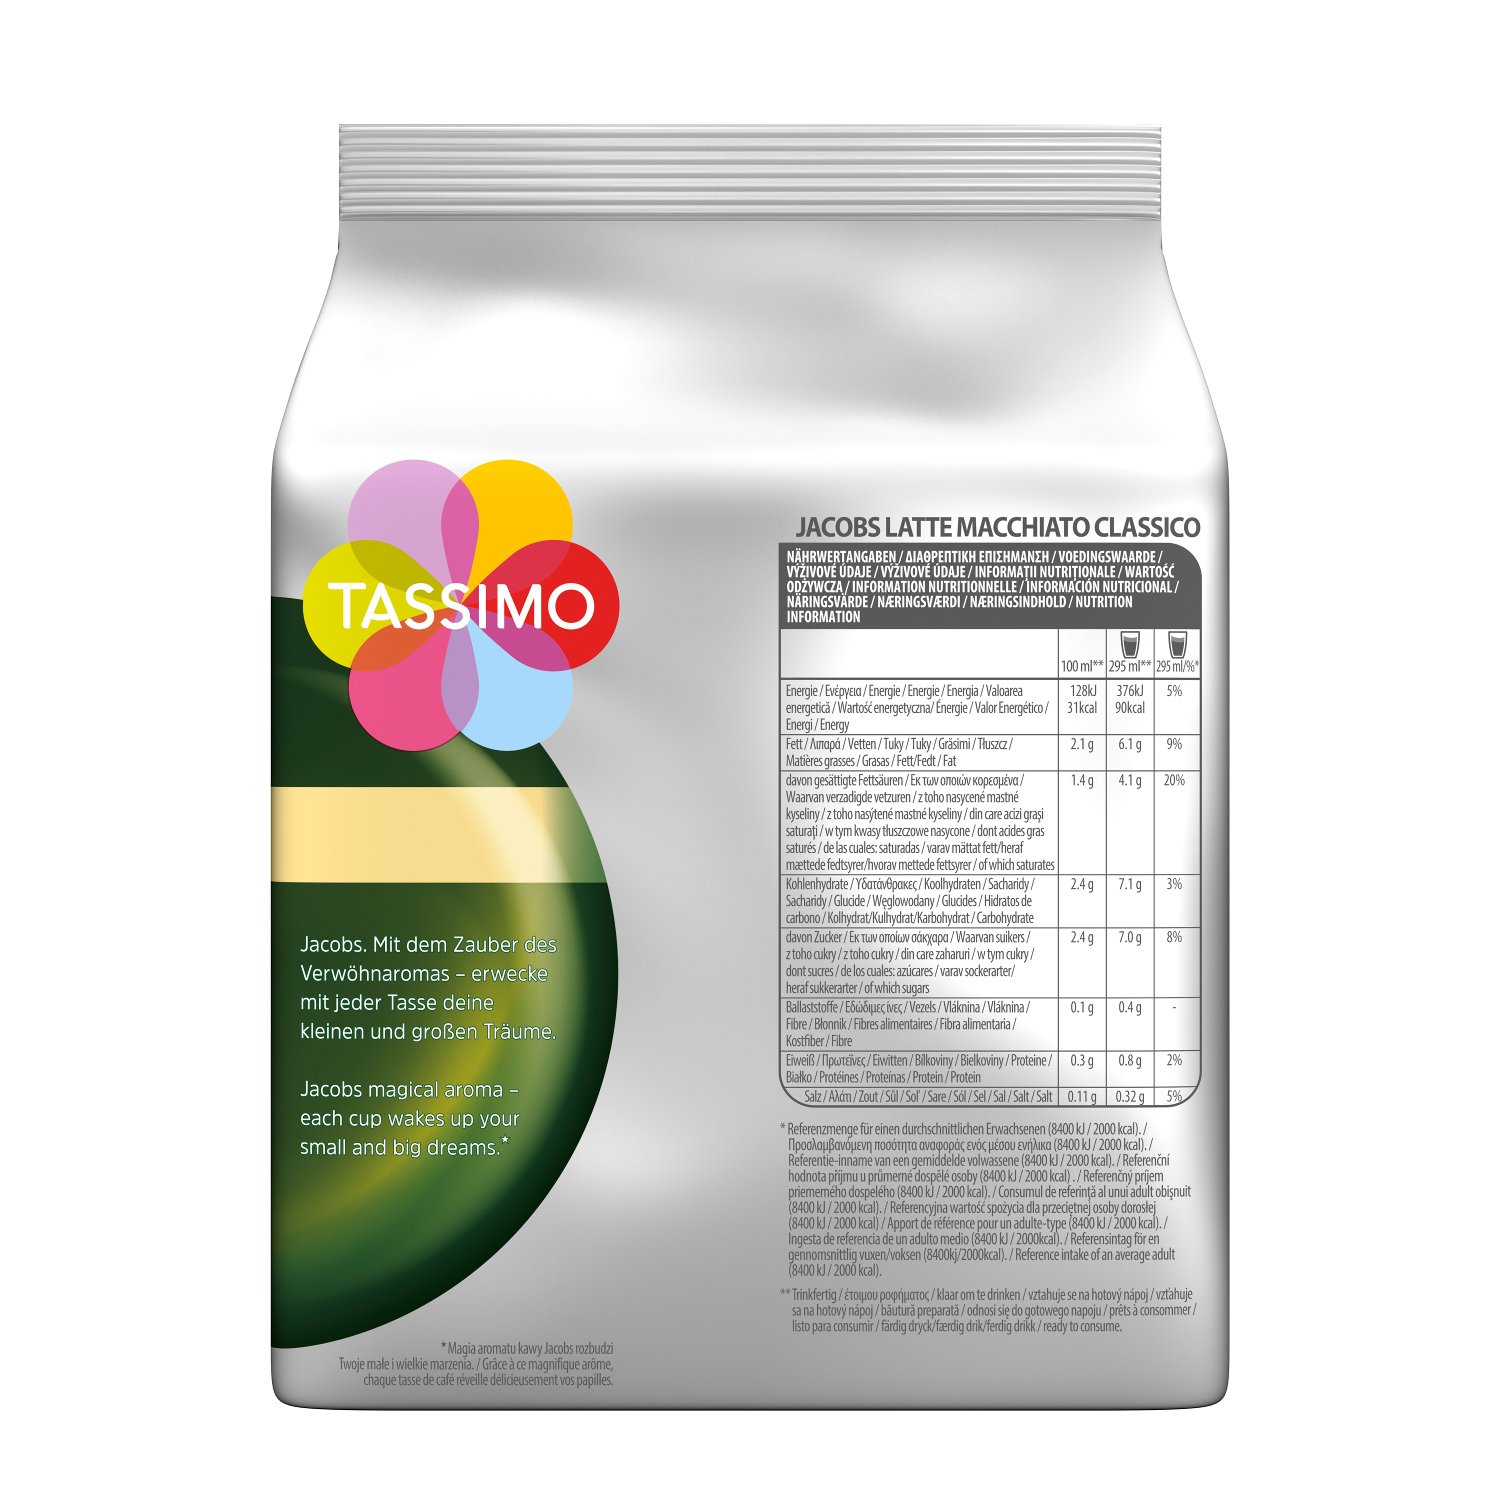 TASSIMO Creamy Macchiato (T-Disc (Tassimo Cappuccino Latte Kaffeekapseln System)) Milka Maschine Collection Classico